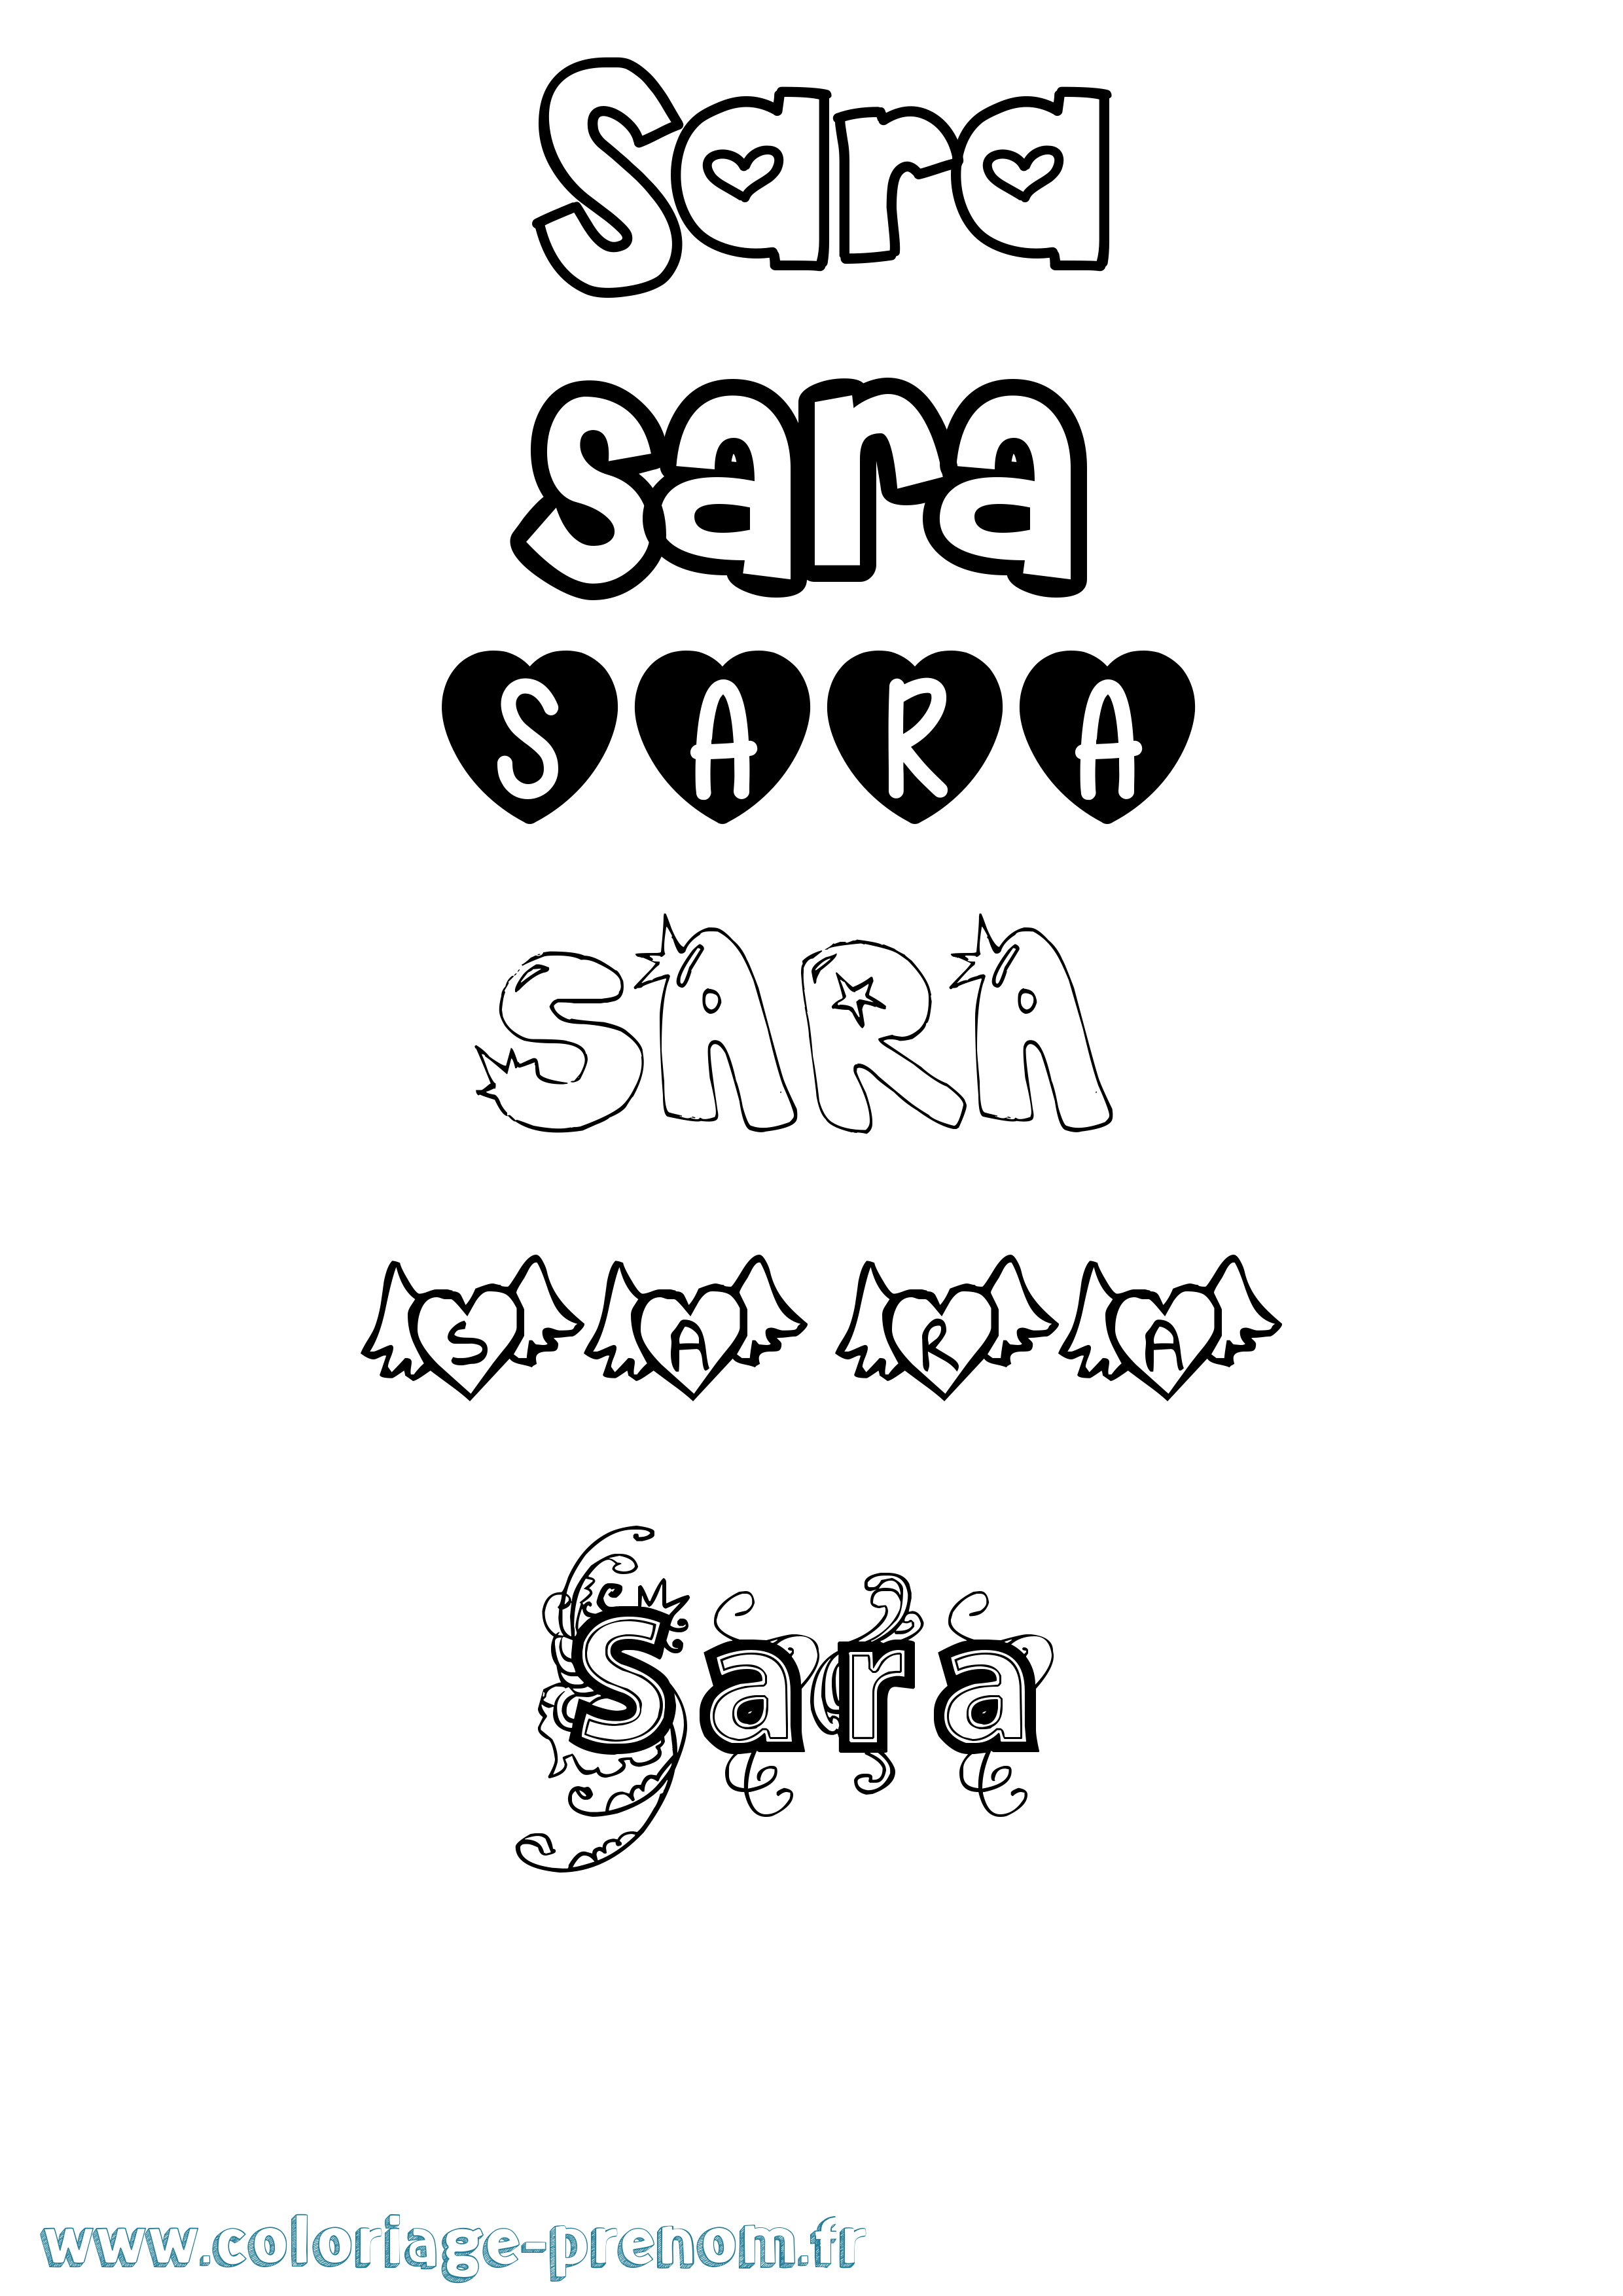 Coloriage prénom Sara Girly